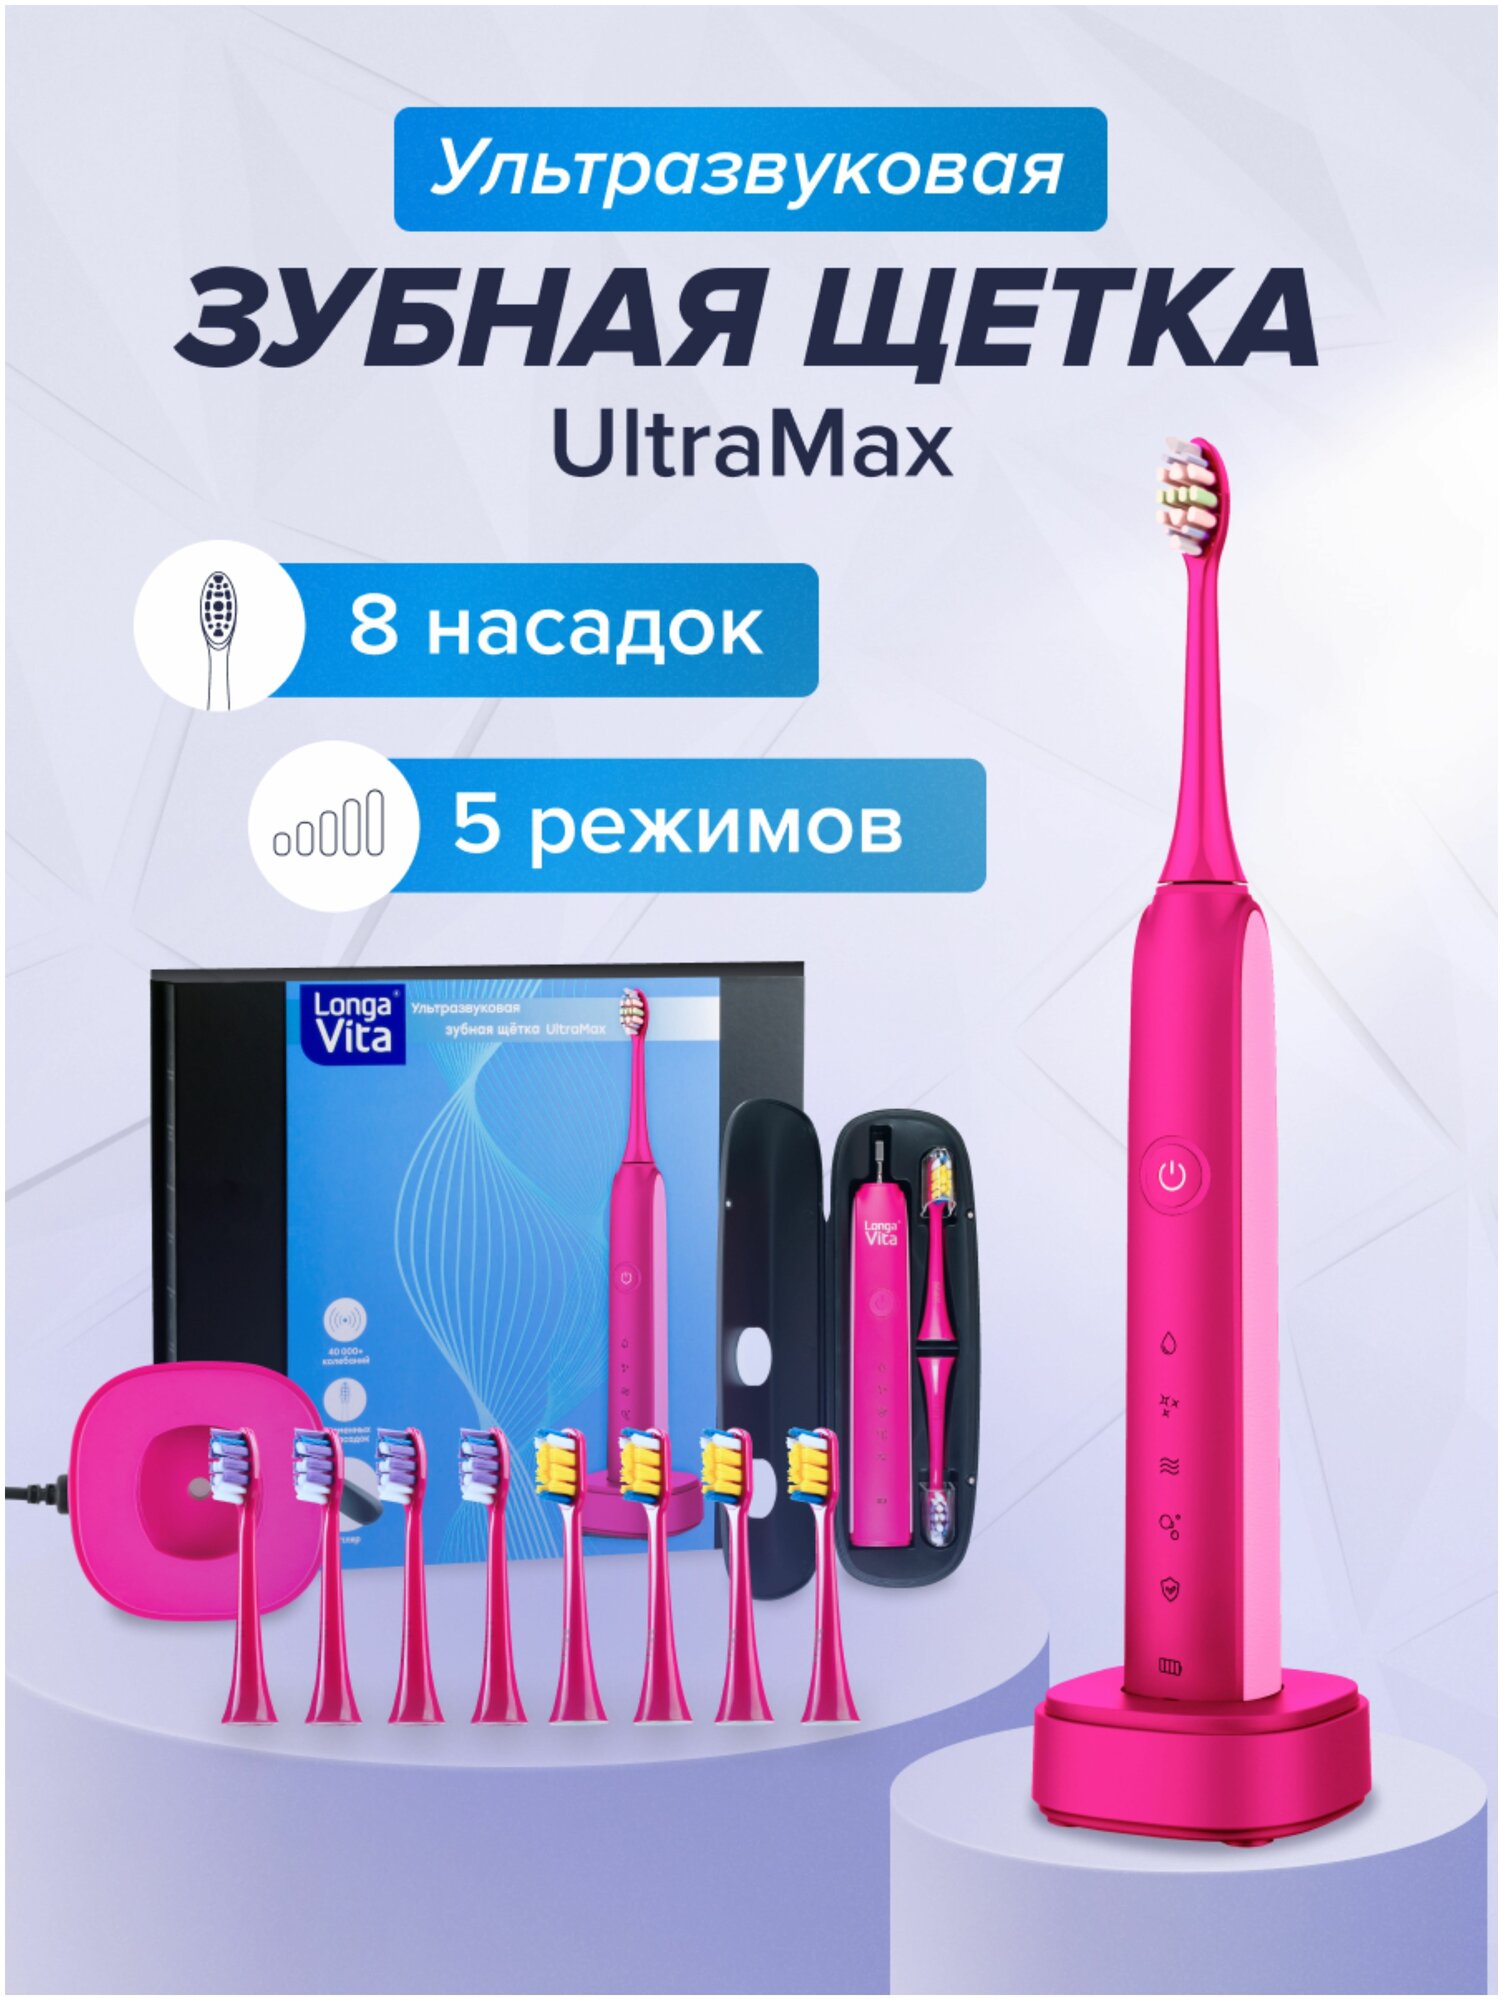 Longa Vita UltraMax зубная щетка для взрослых, арт. B95RP, электрическая, цвет: розовый